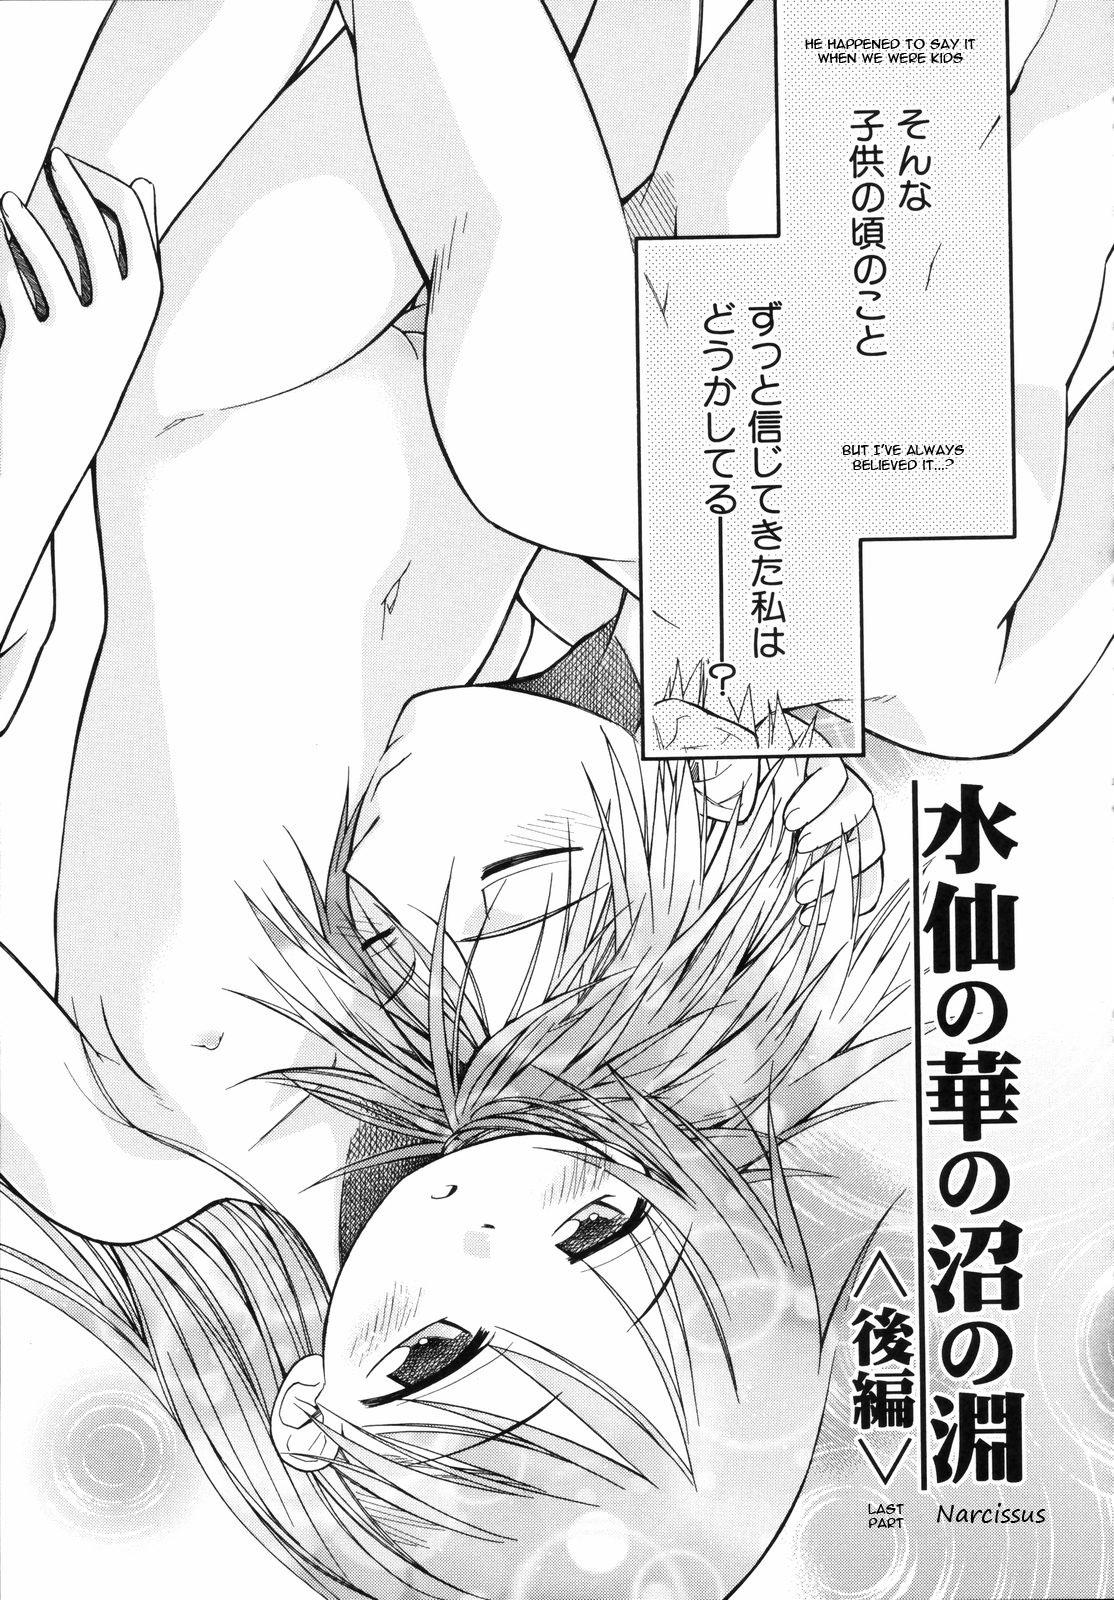 [kiR-Rin] Narcissus Chapter 3 (English) - a.k.a. Imouto / Emote Mode : Suisen no Hana no Numa no Fuchi (sensualaoi) 3